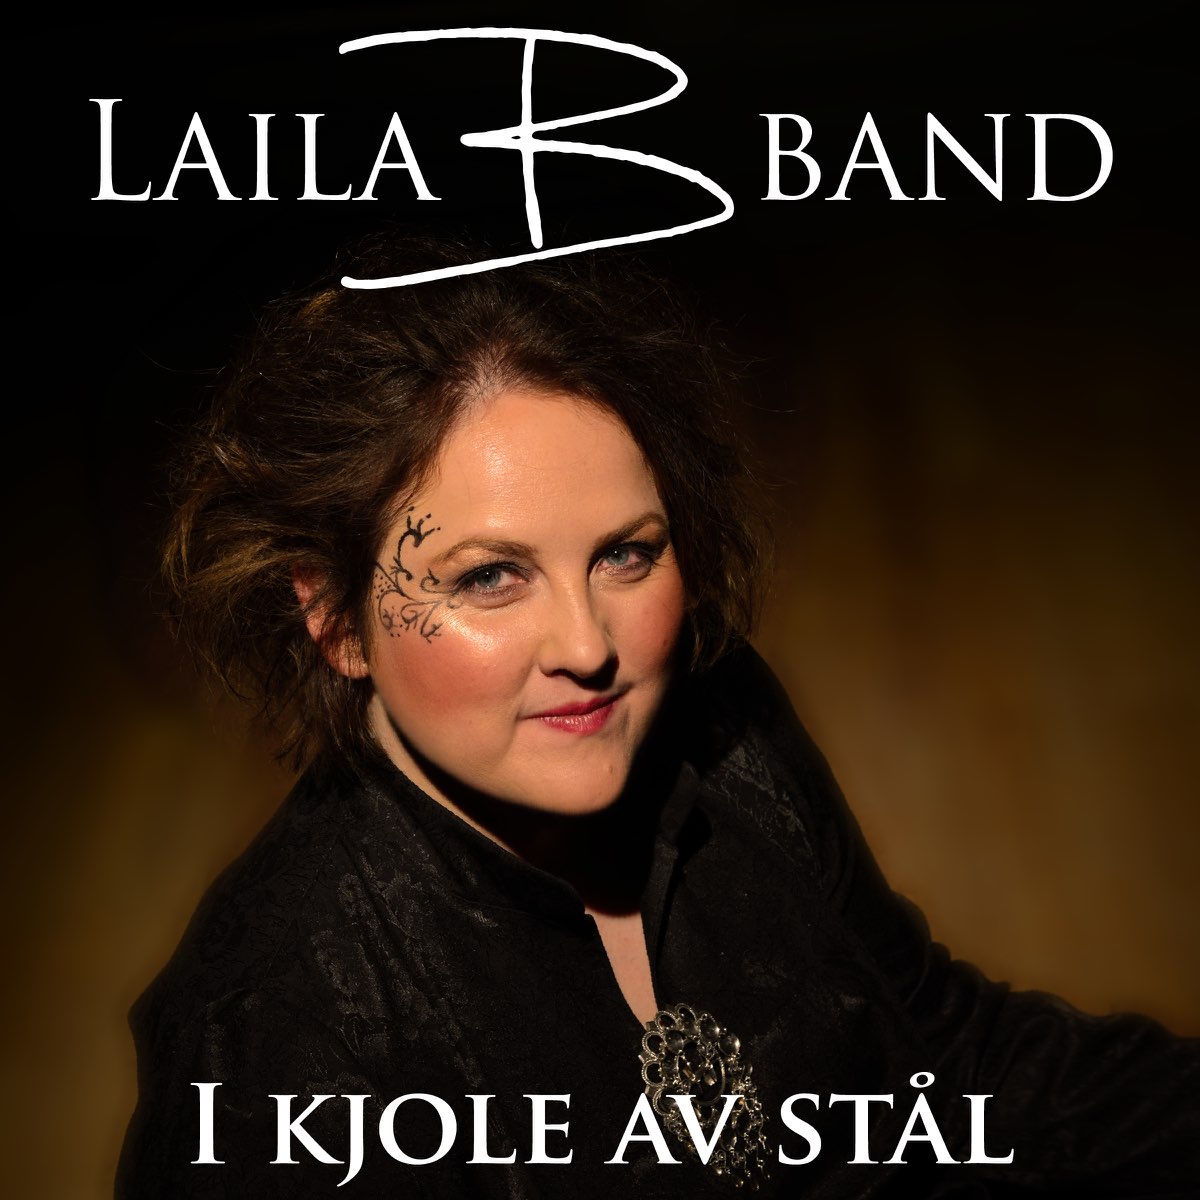 I Kjole Av Stål - Album by Laila B Band - Apple Music